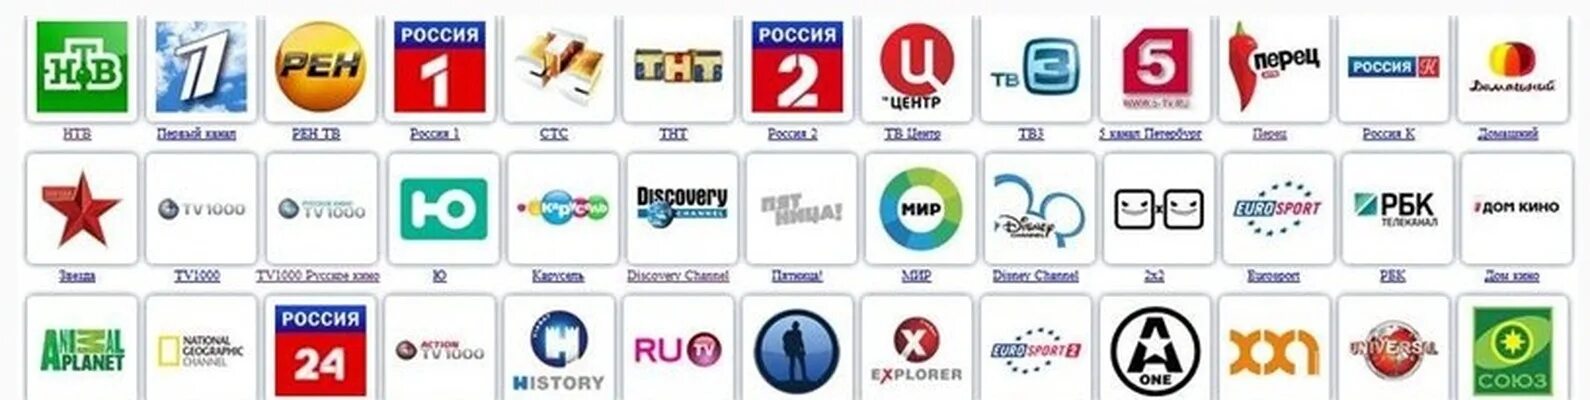 Тв канал т. Логотипы российских телеканалов. IPTV Телеканалы. IPTV российские каналы. Логотипы иностранных телеканалов.